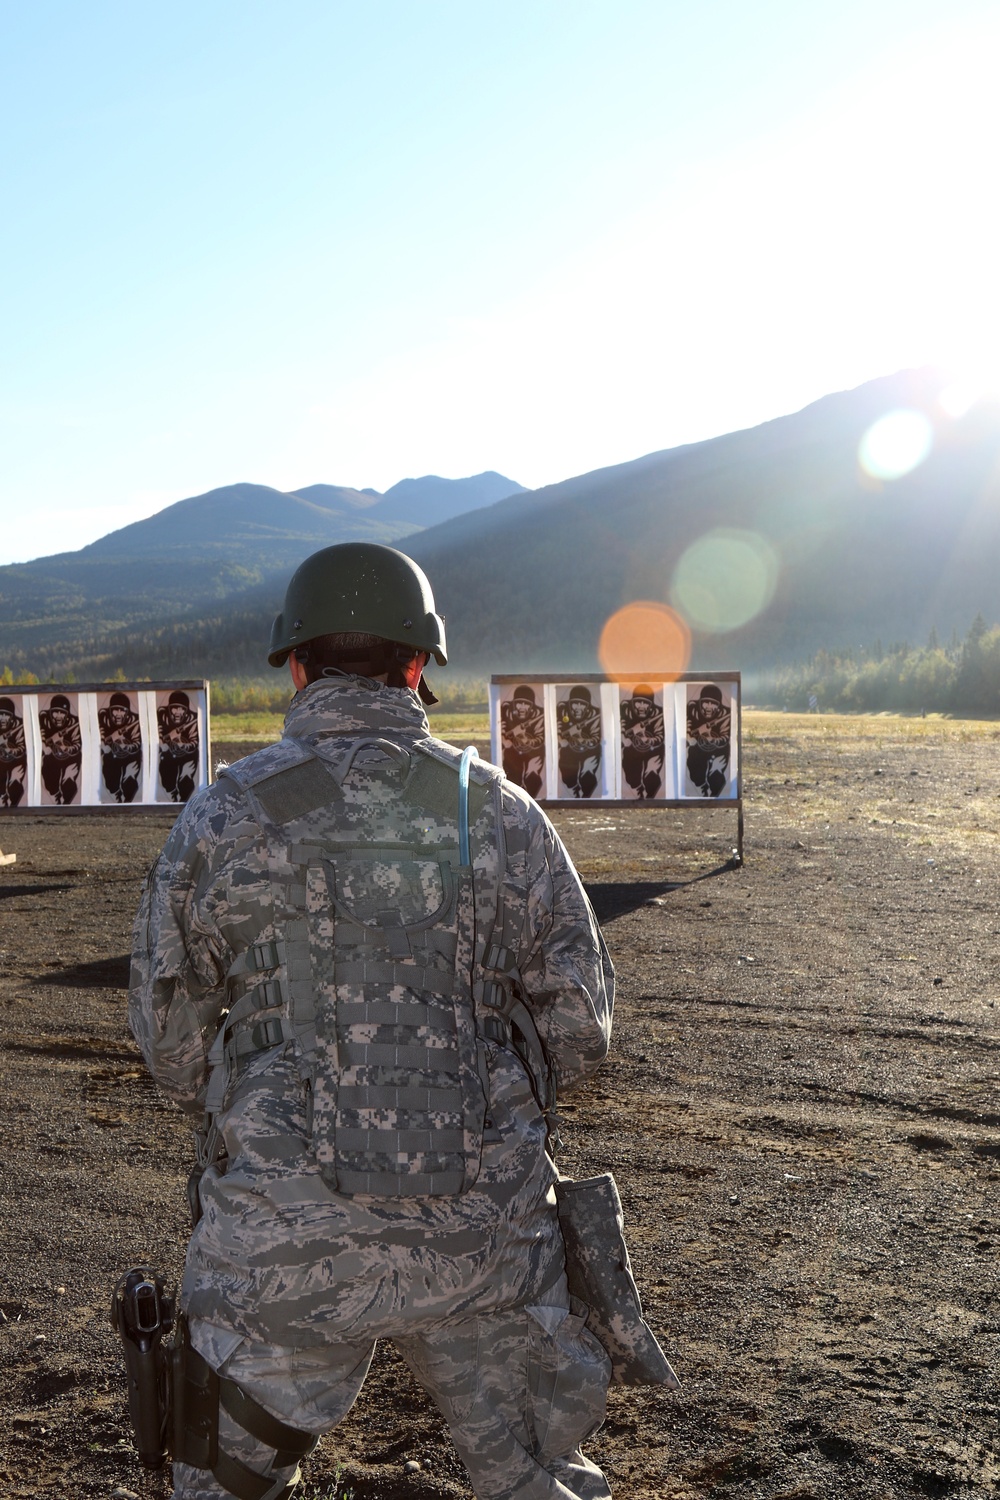 Alaska Guardsmen compete, share marksmanship skills at The Adjutant General’s Match